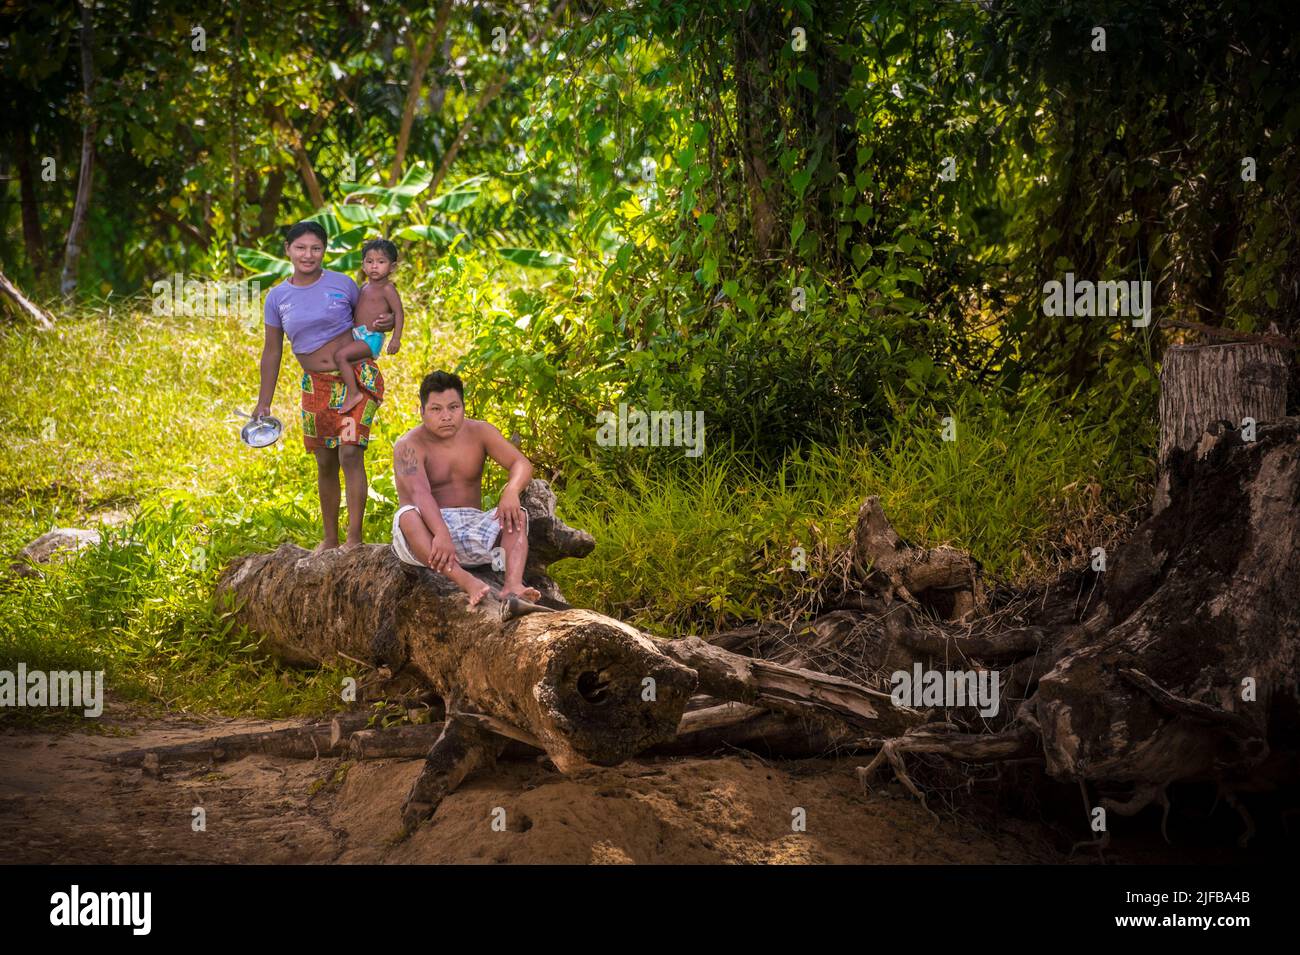 France, French Guiana, Amazonian Park, heart zone, Camopi, Native American family by the Camopi river Stock Photo